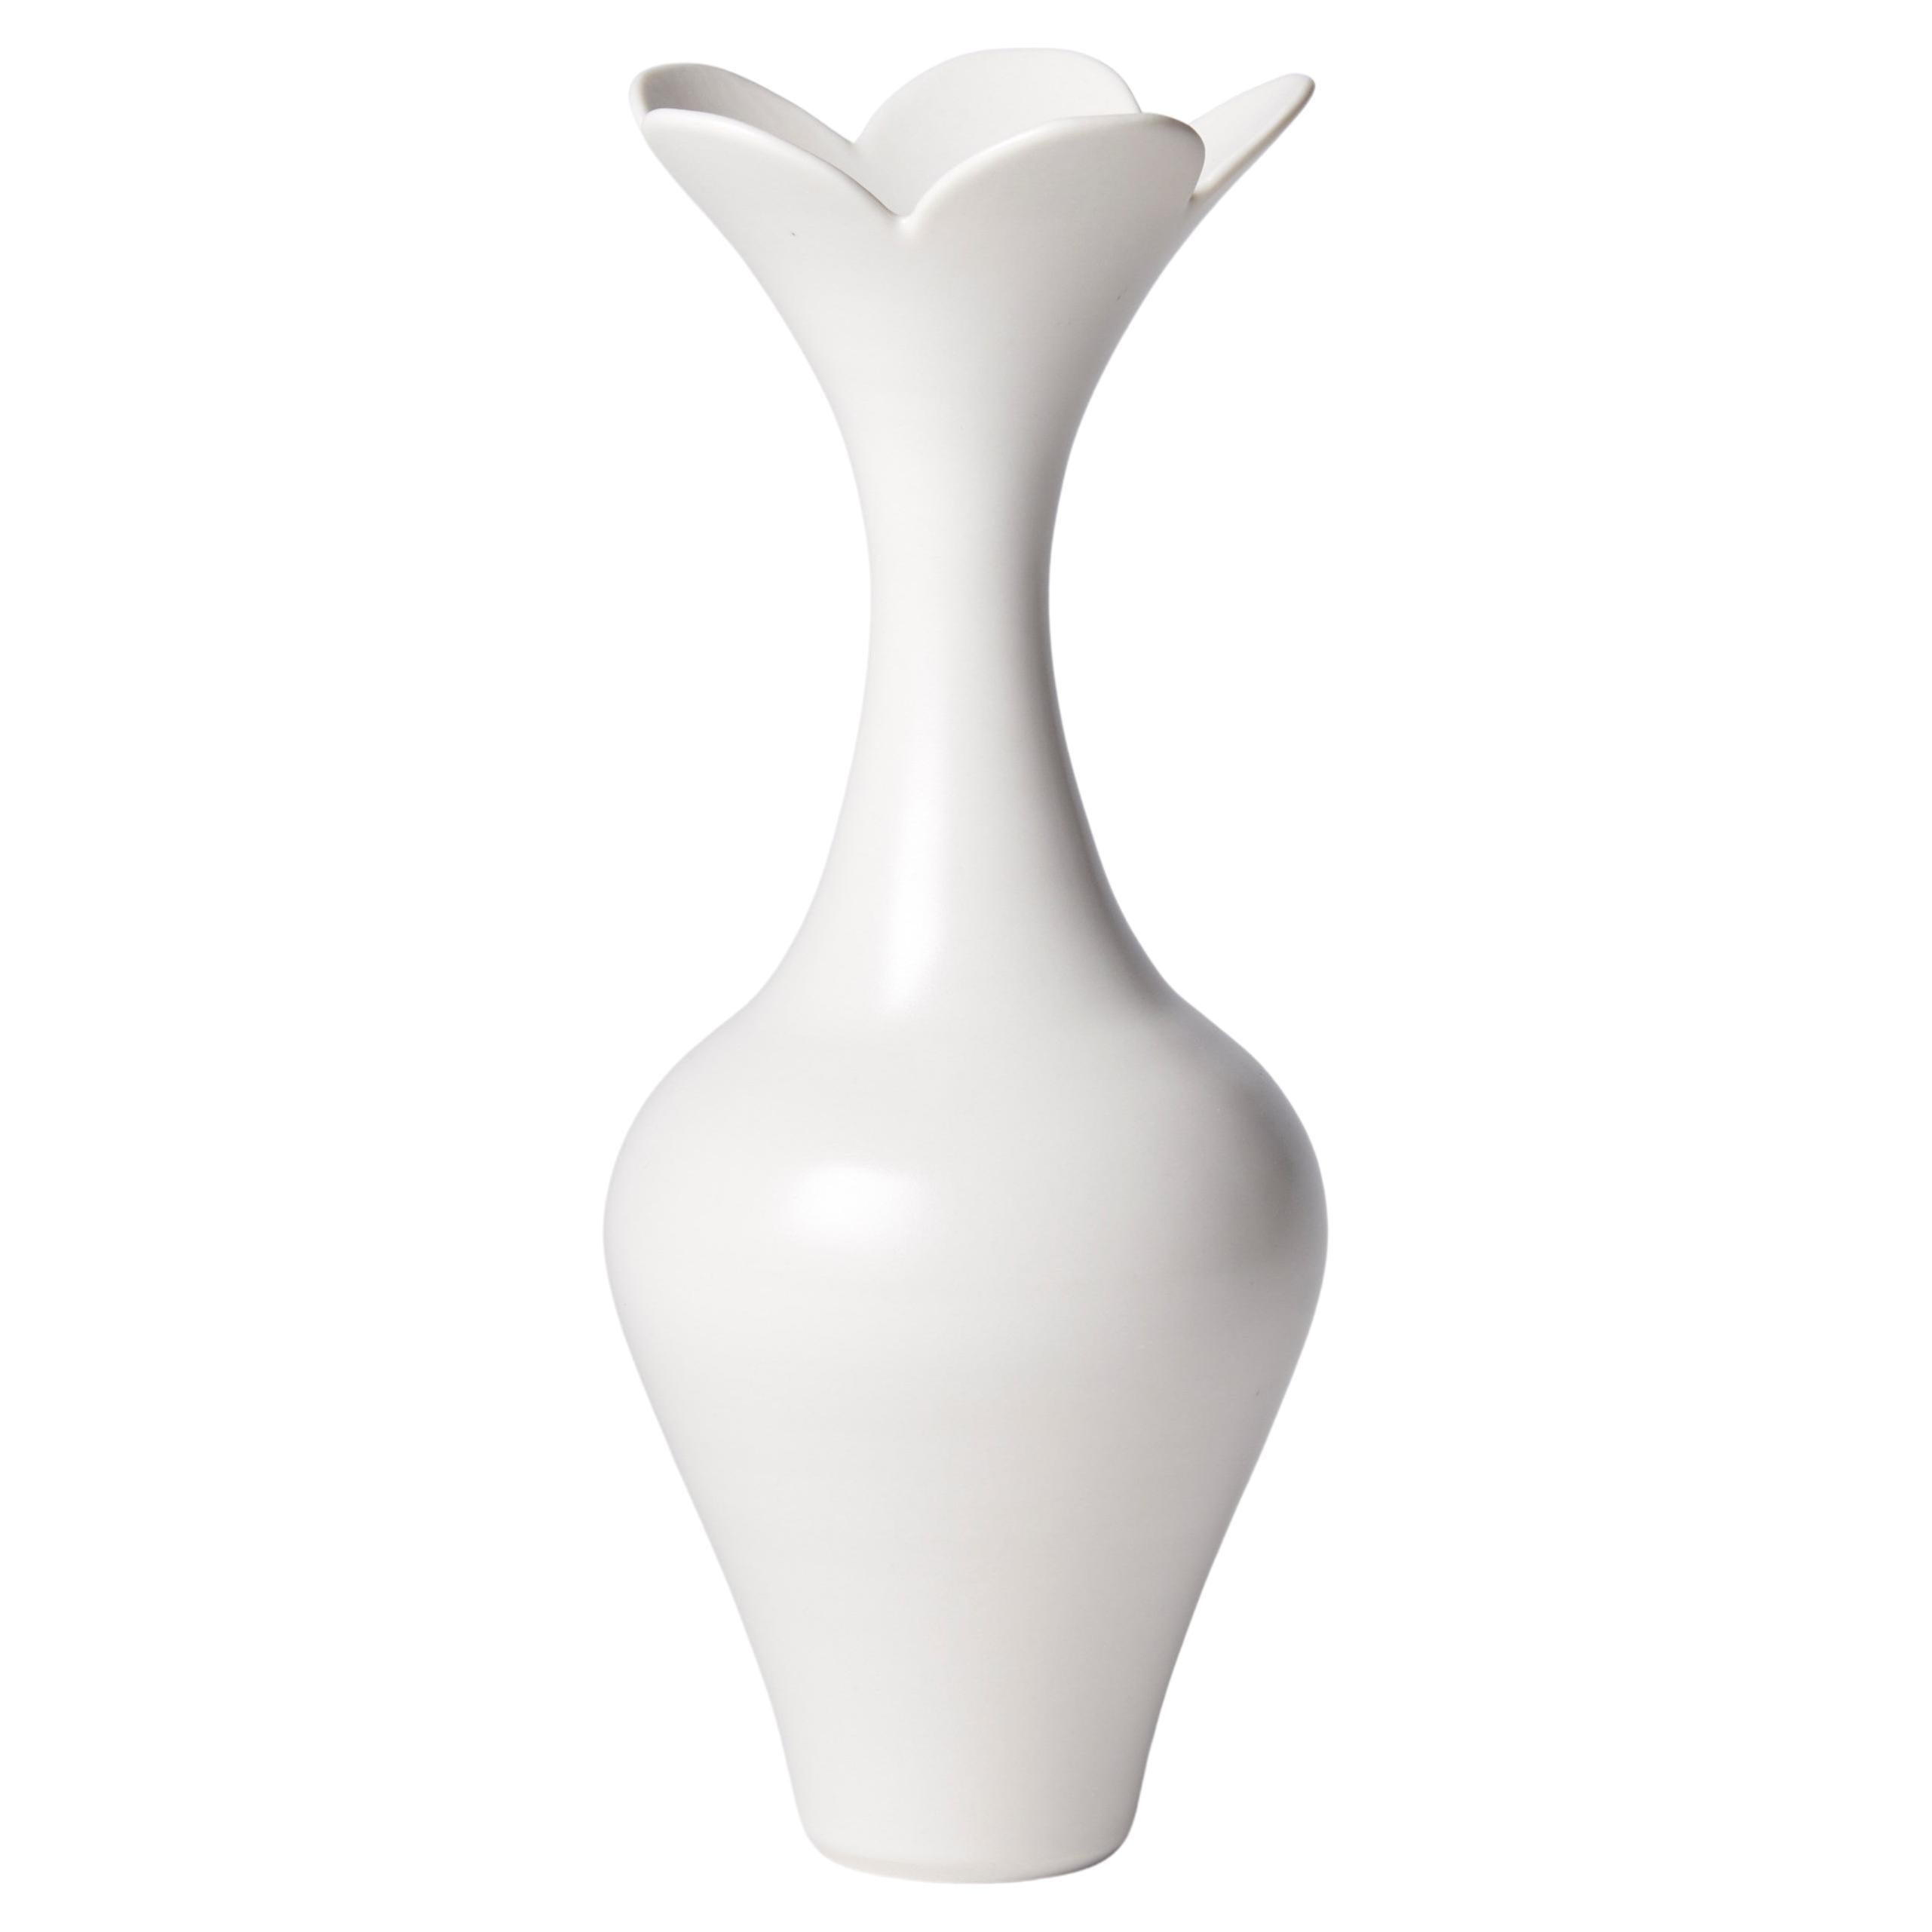 Vase with Petal Rim, a Unique White Porcelain Vase by Vivienne Foley